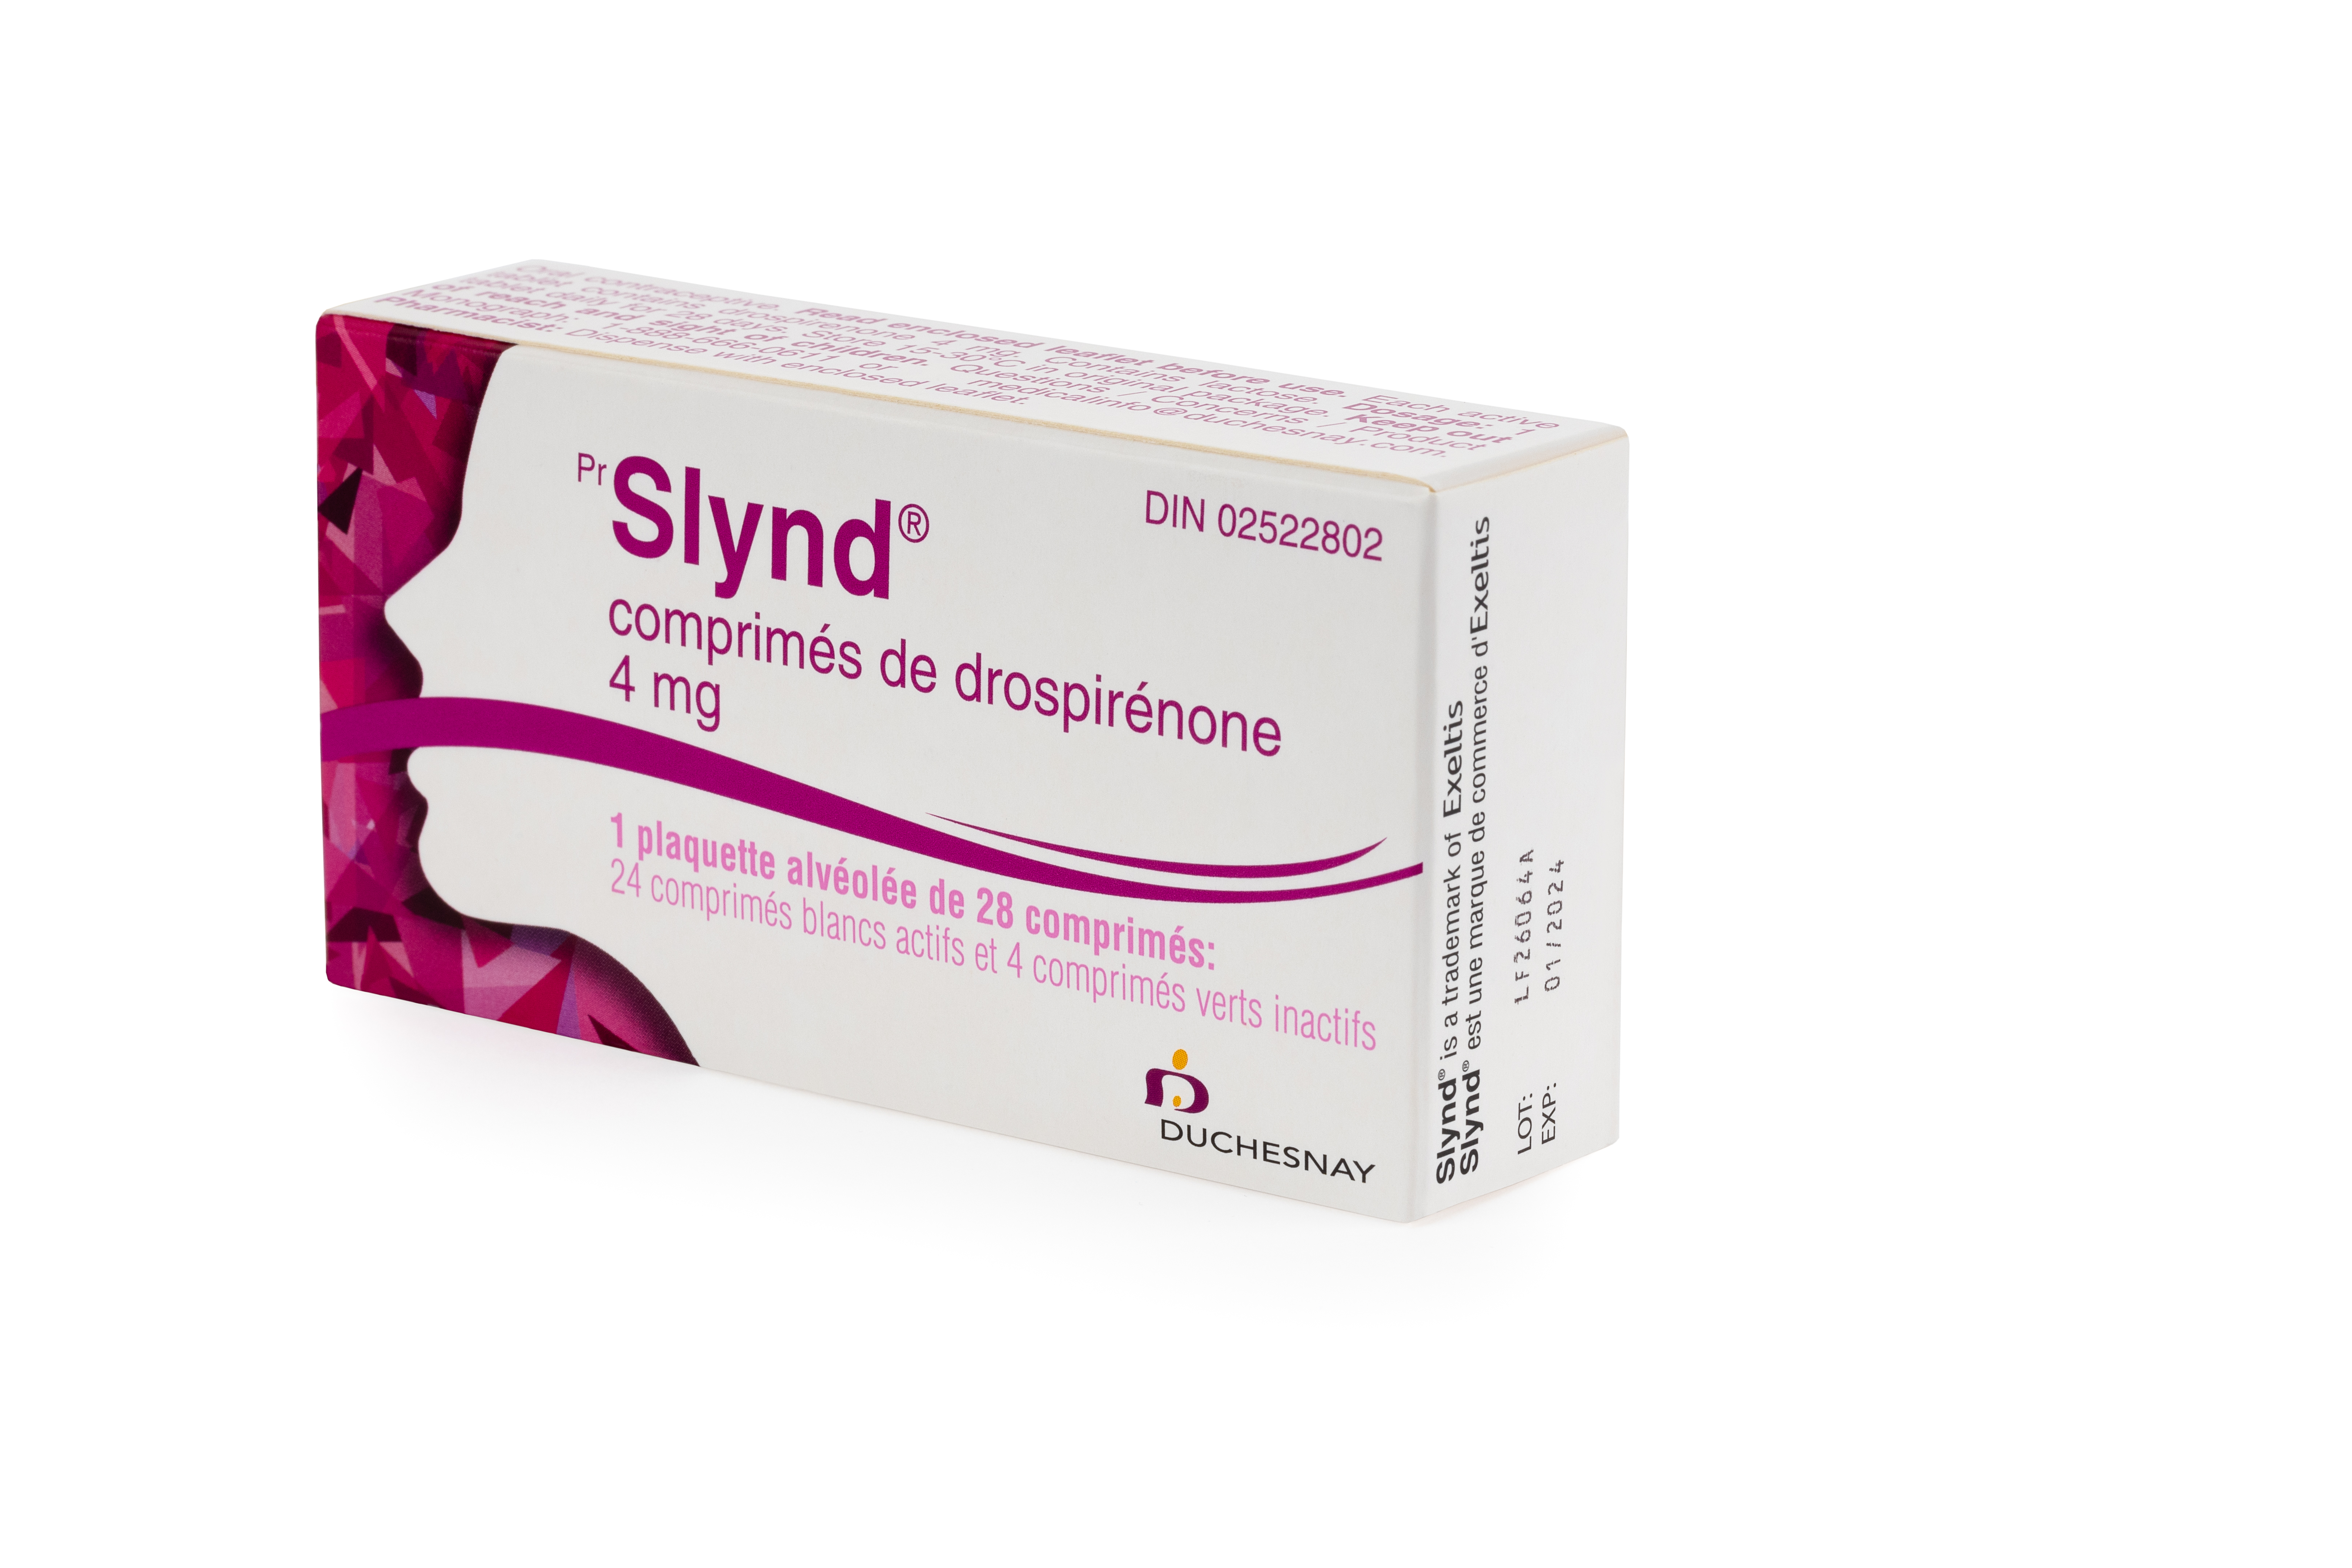 Slynd ᴹᴰ (drospirénone)